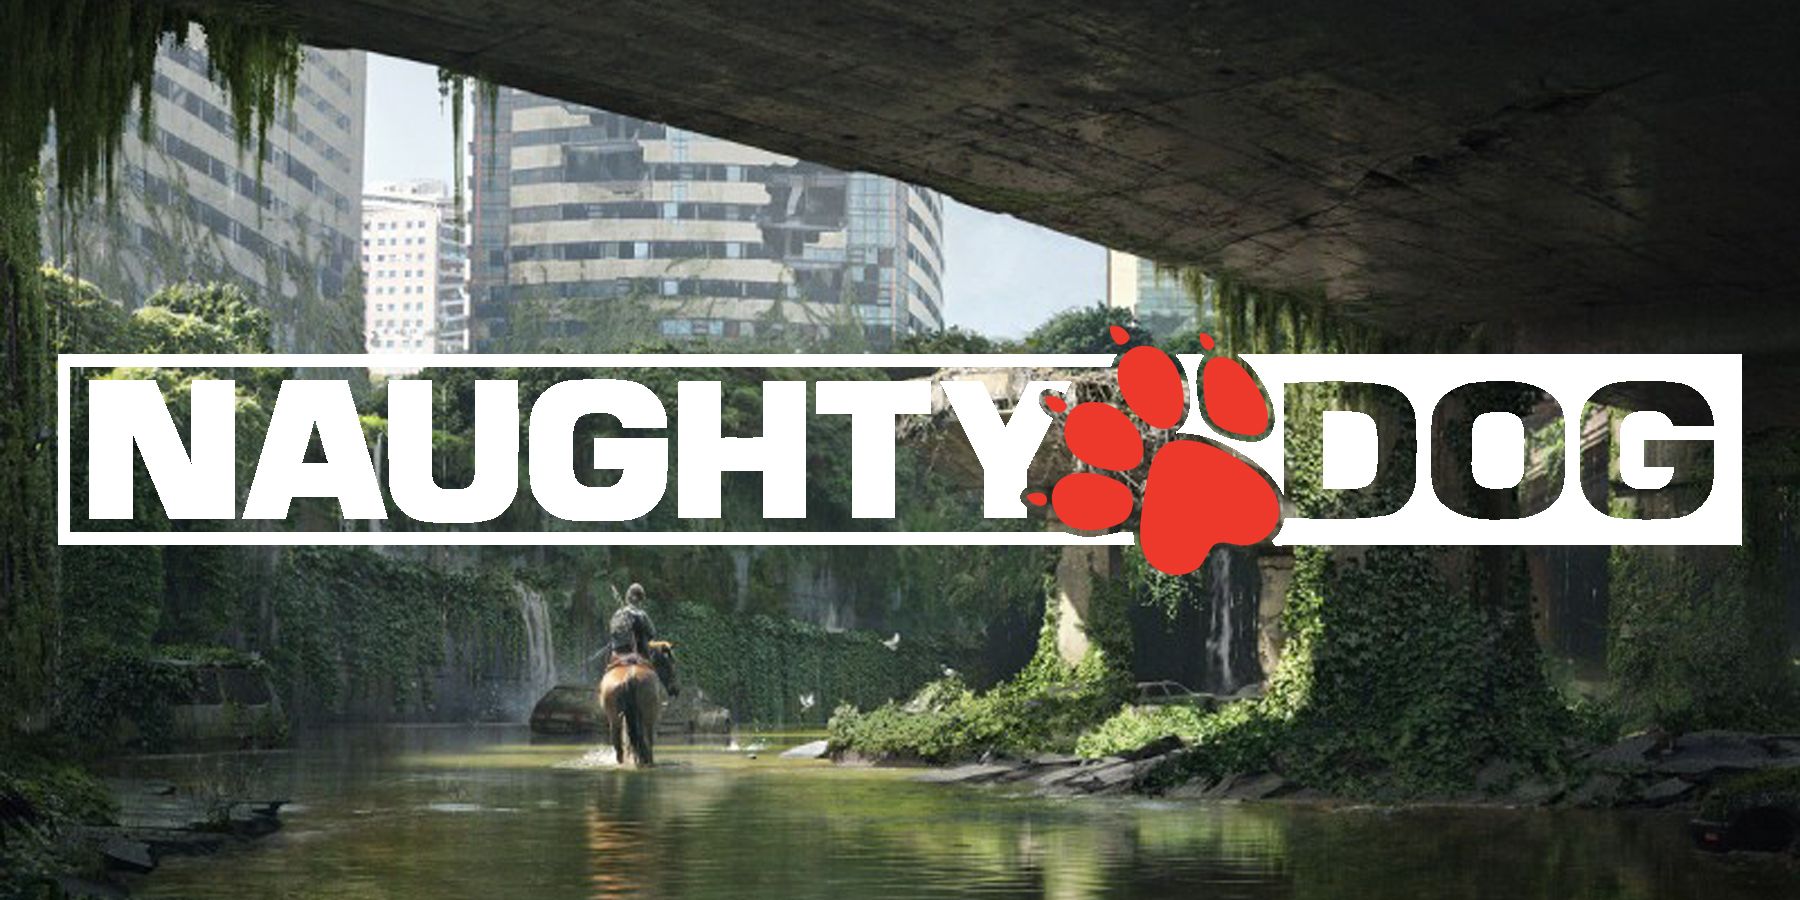 Game Informer - Neil Druckmann becomes co-president of Naughty Dog